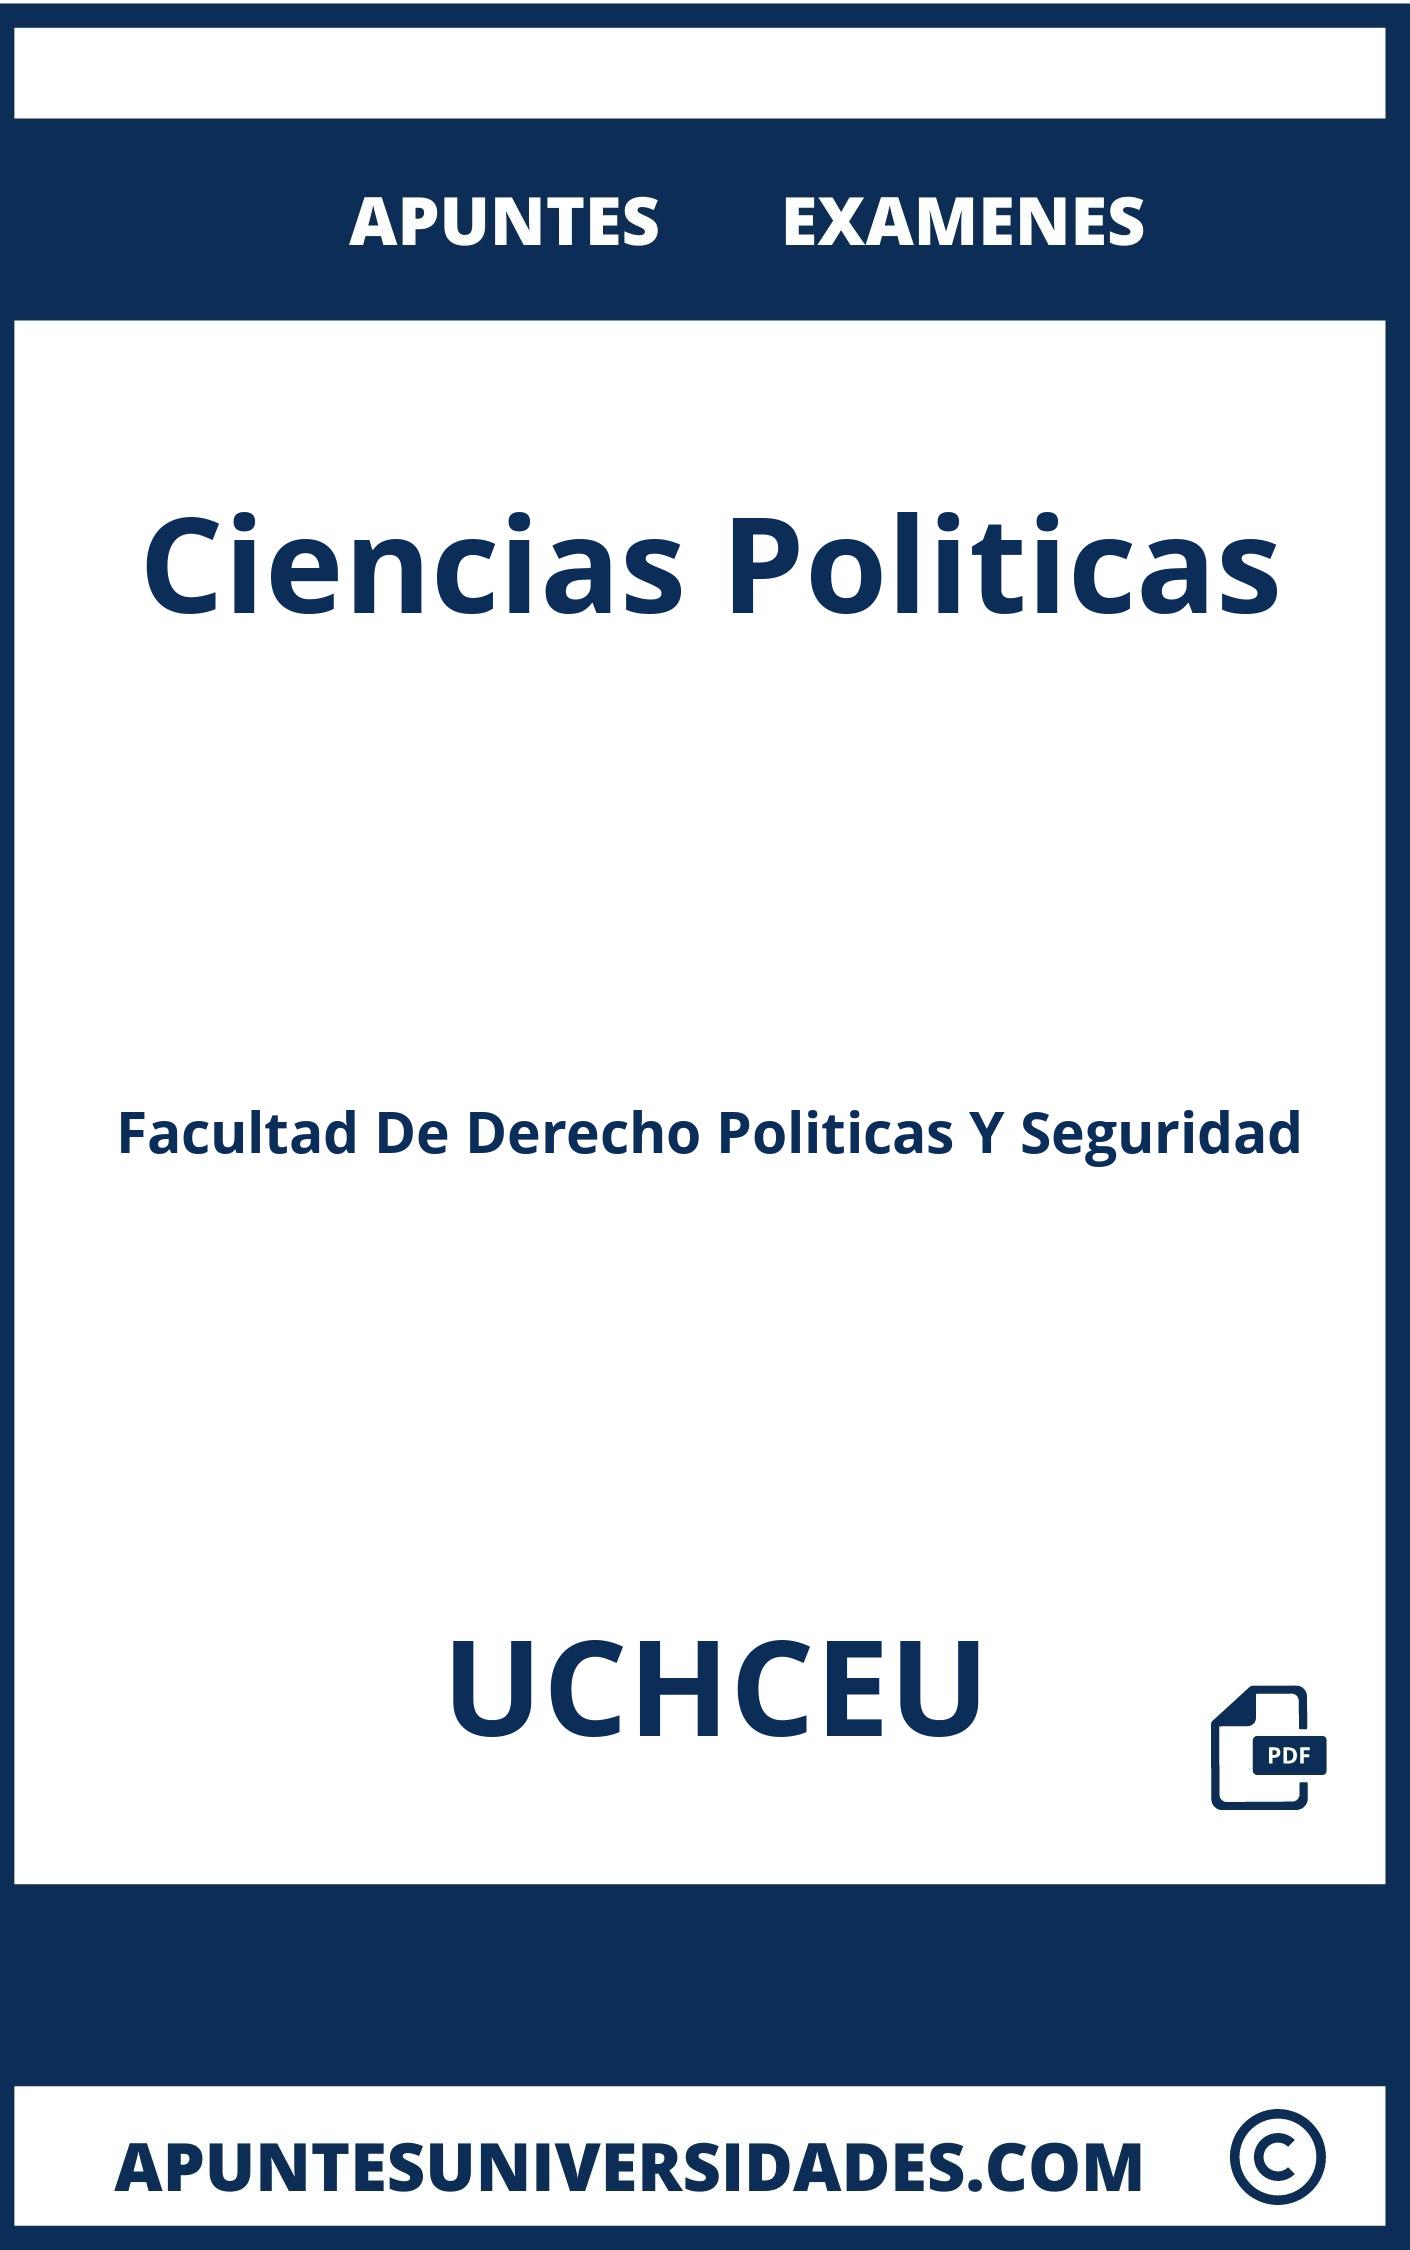 Examenes y Apuntes Ciencias Politicas UCHCEU